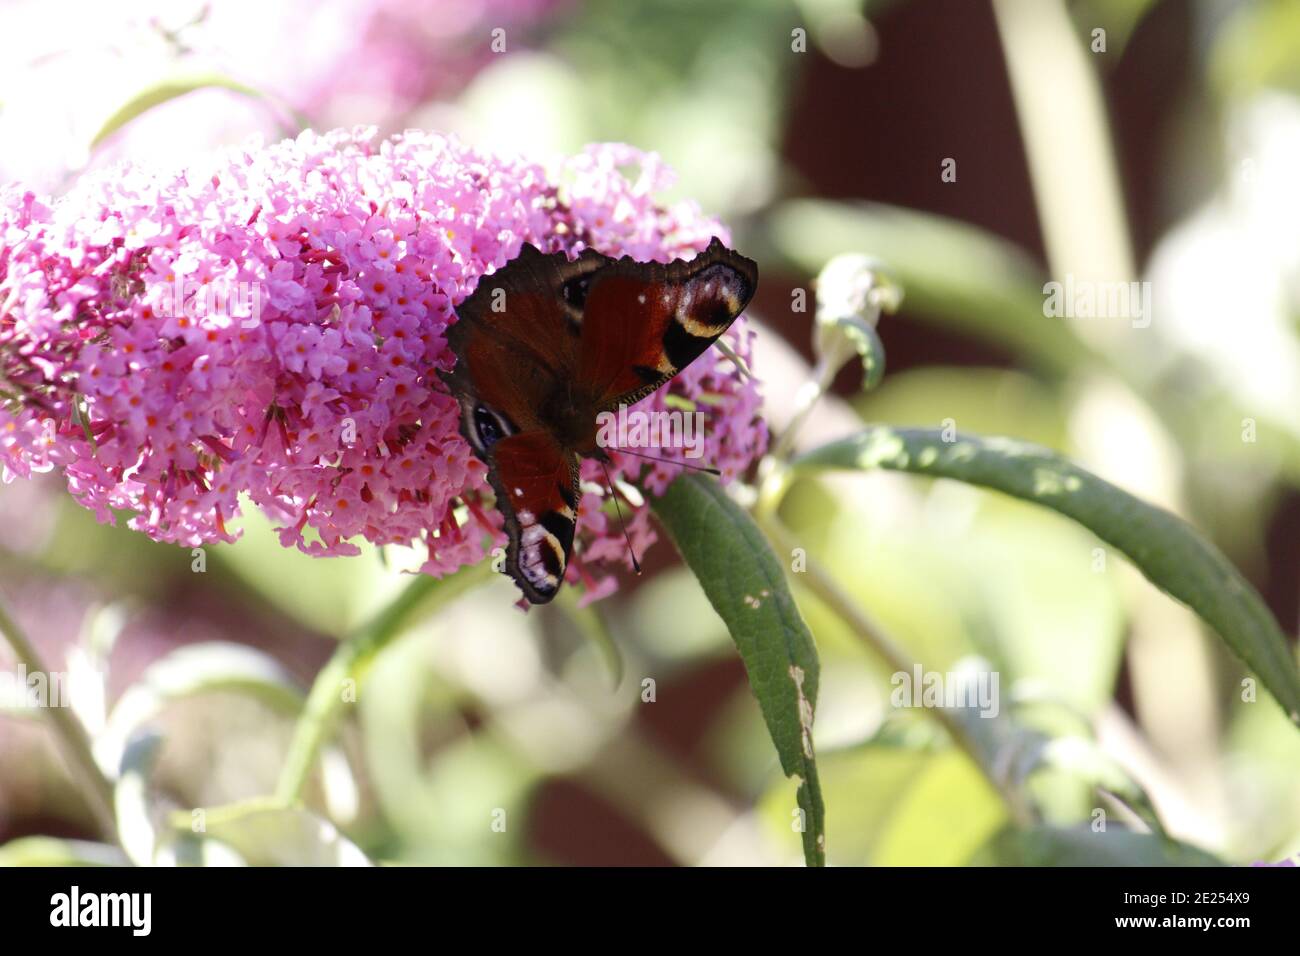 Selektive Fokusaufnahme eines papillon-Schmetterlings auf einer Buddleia Blume Stockfoto